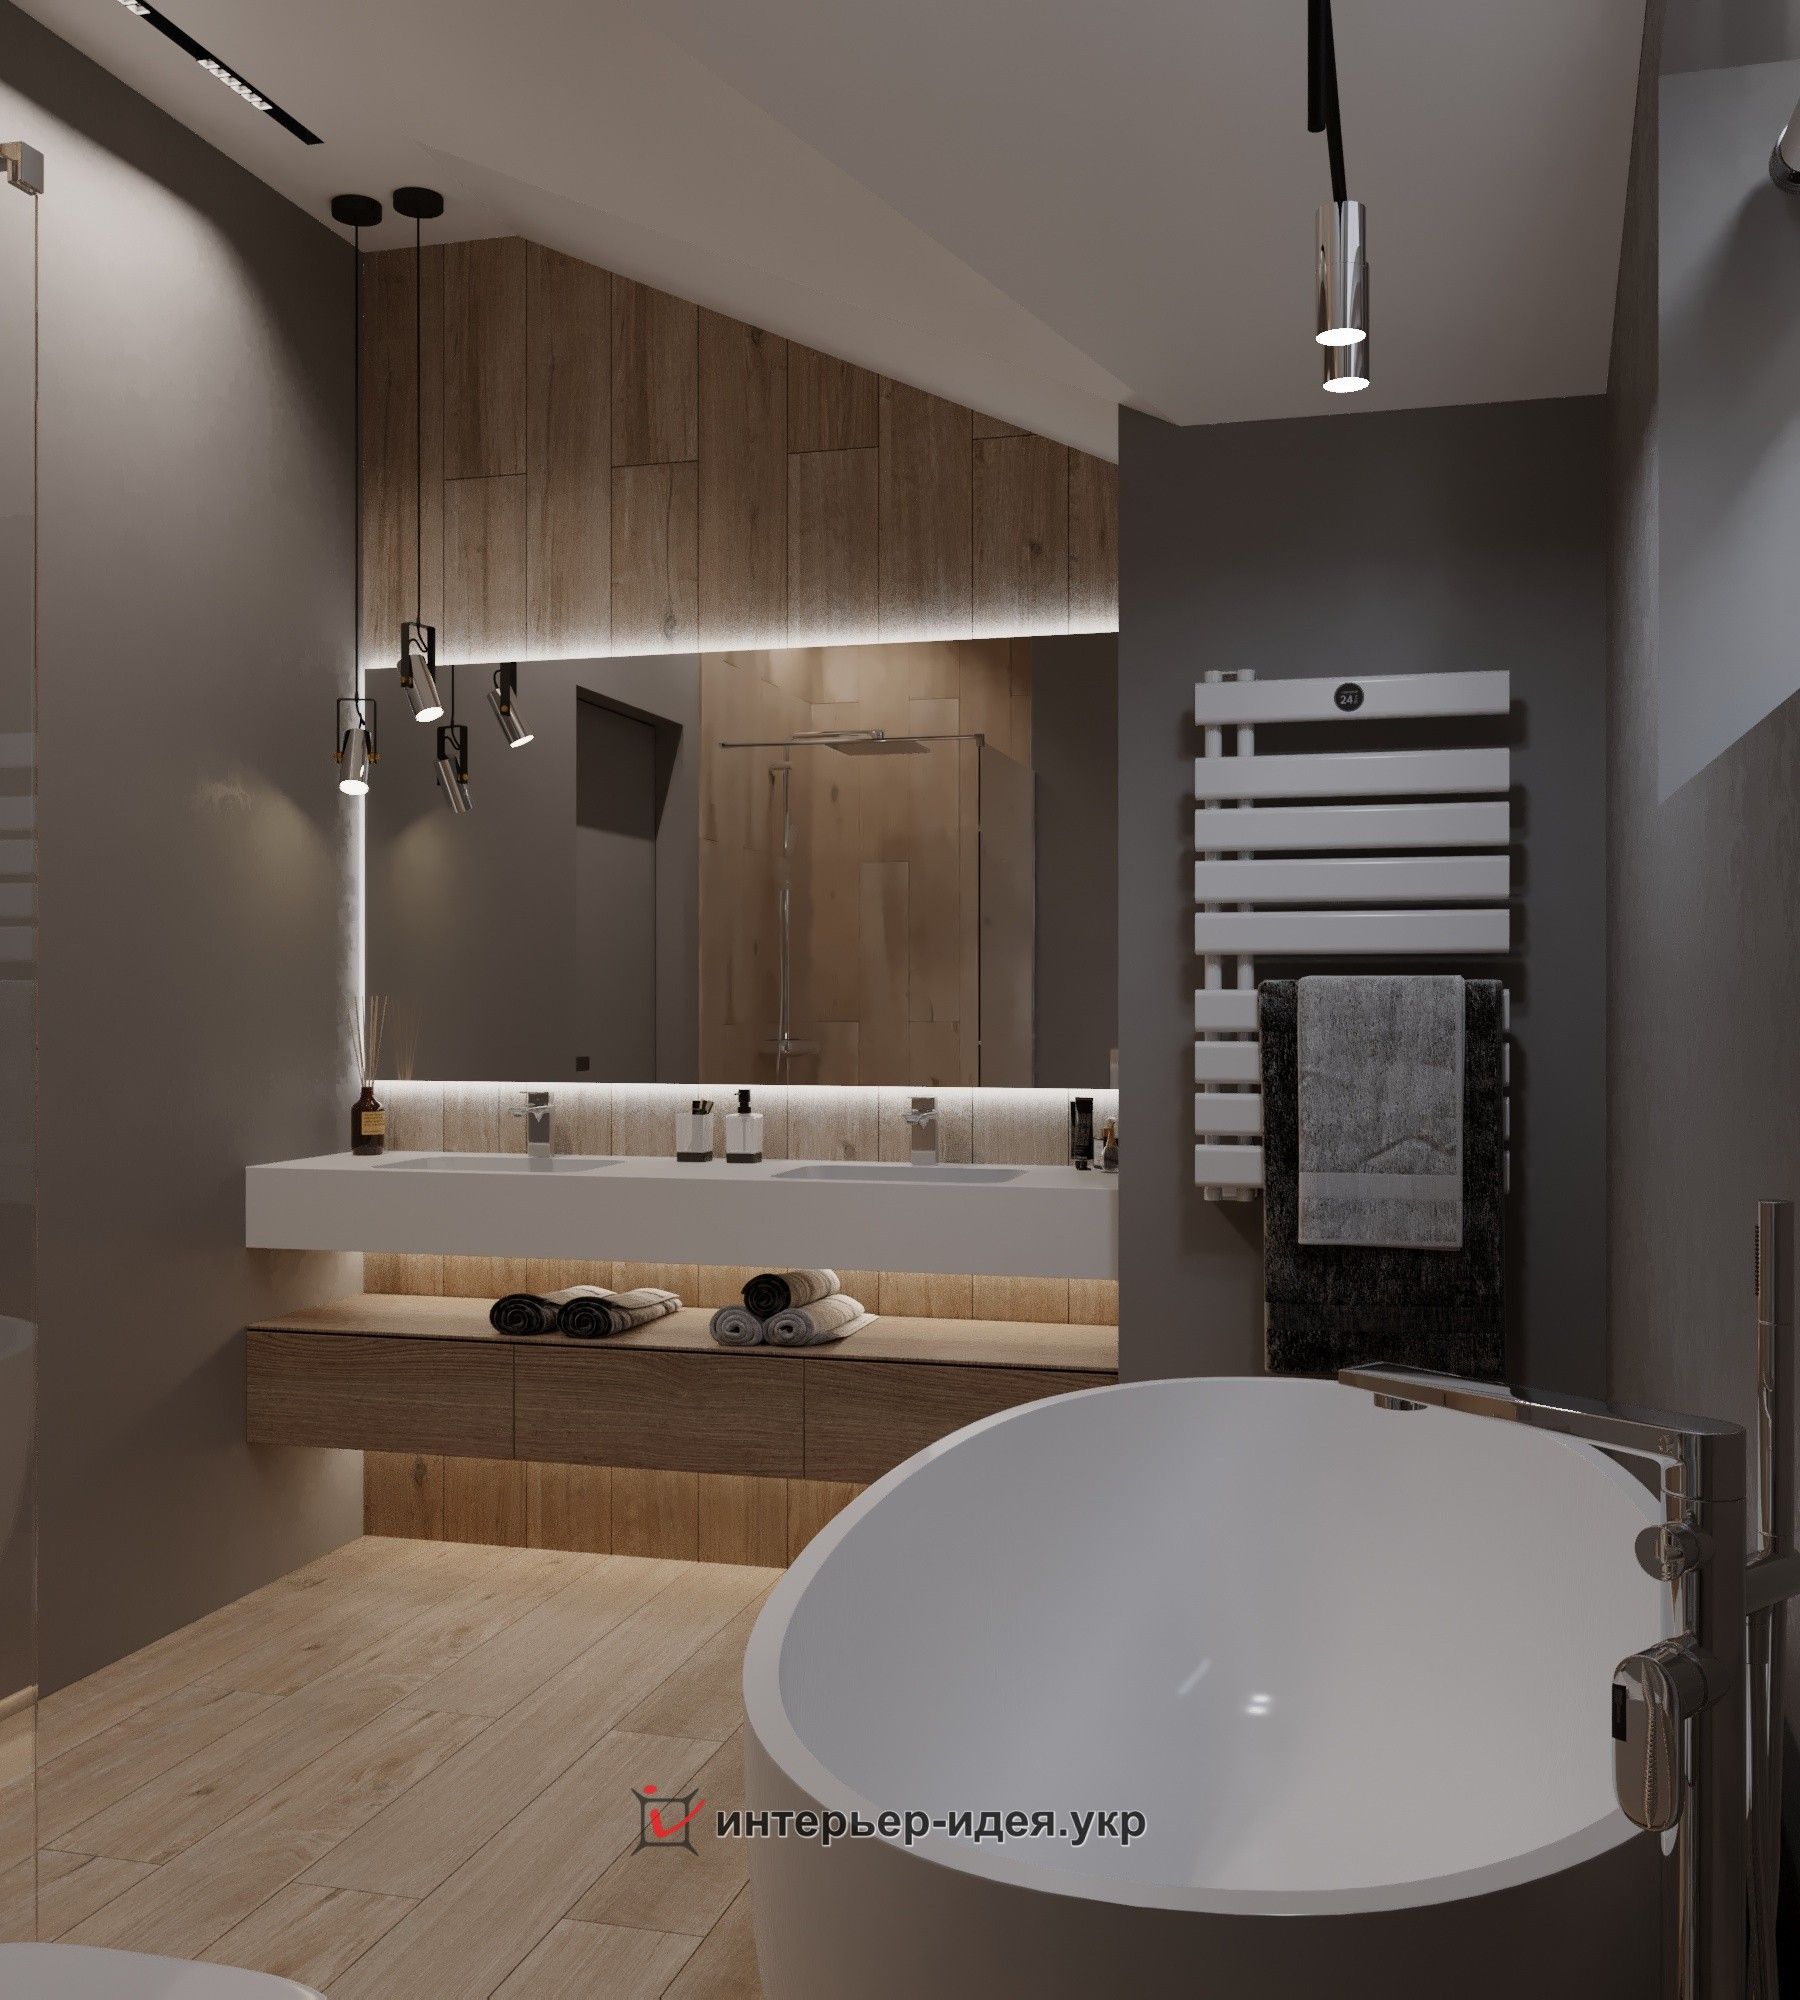 Ванная комната – дизайн проект настроит вас на нужный ритм